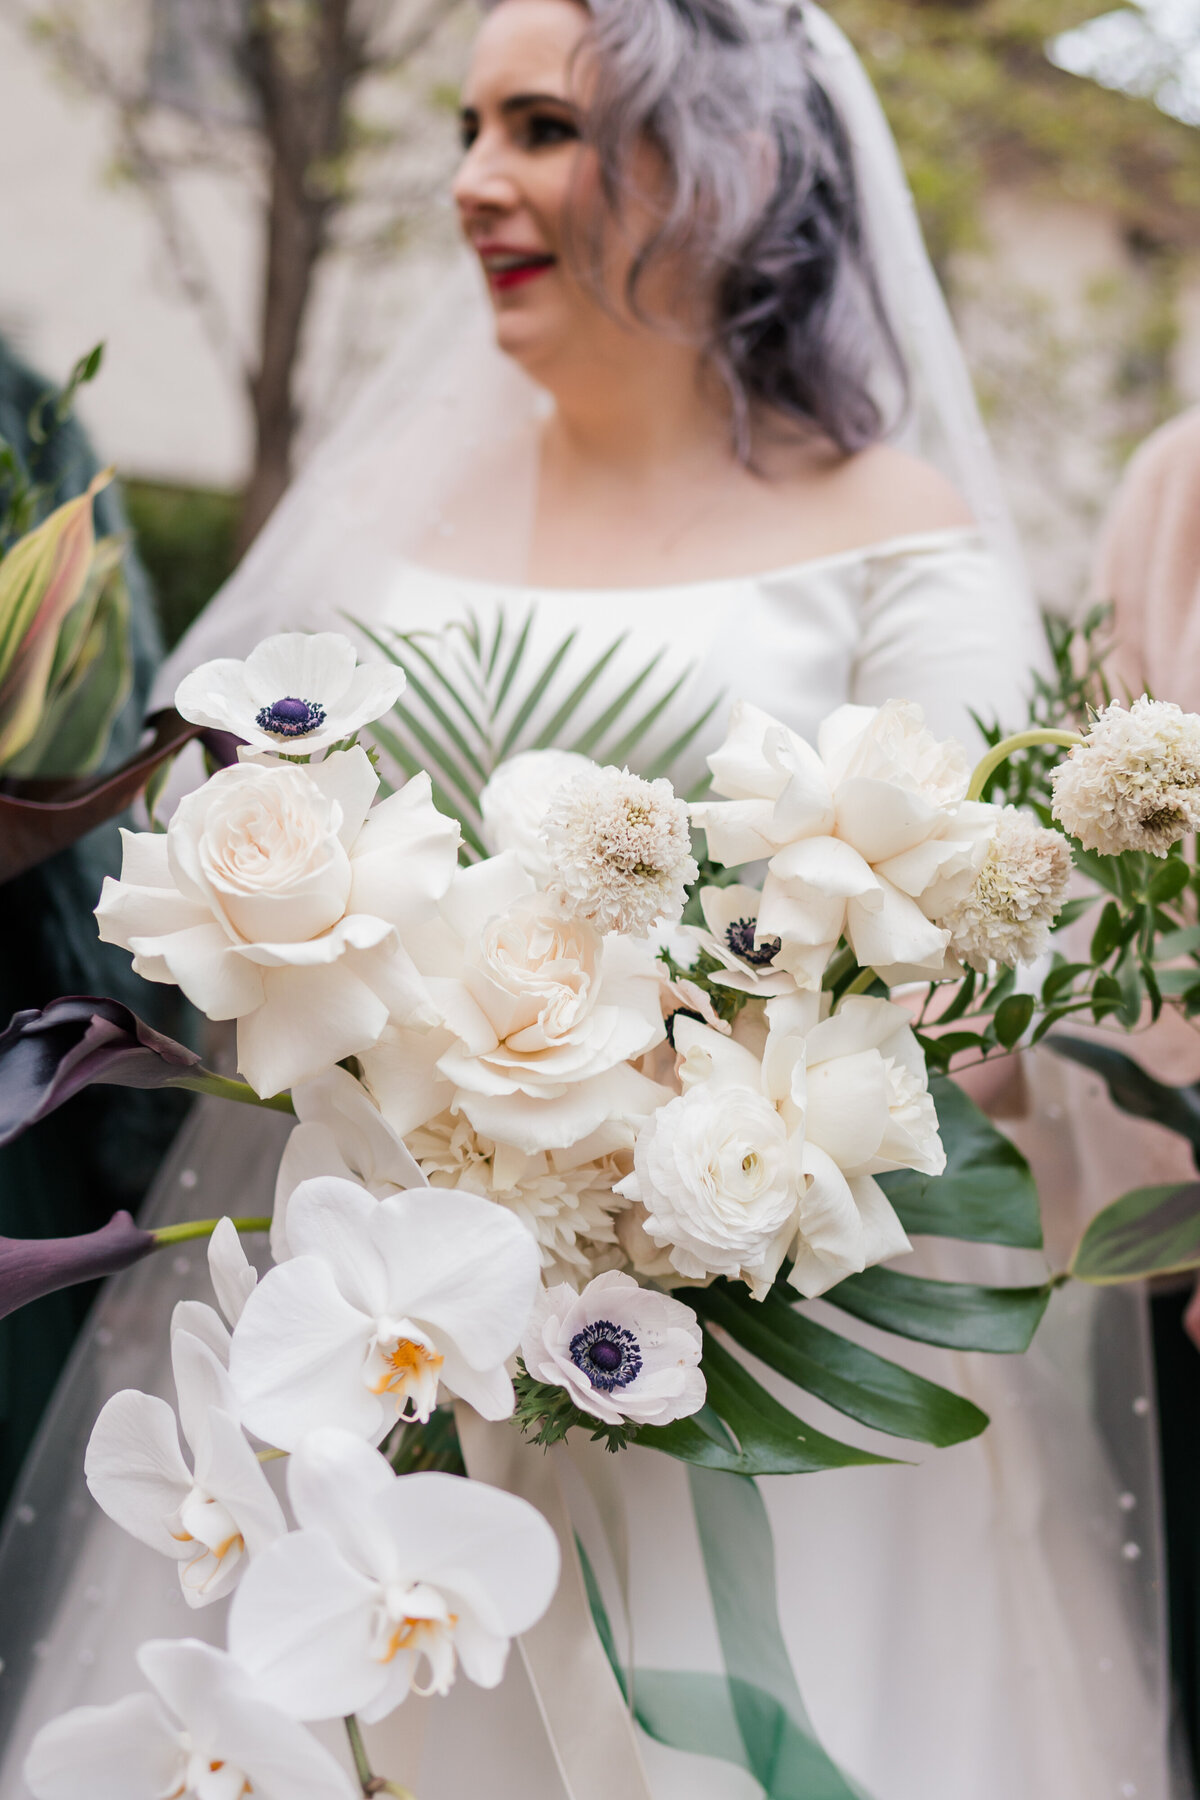 Brides flower inspiration